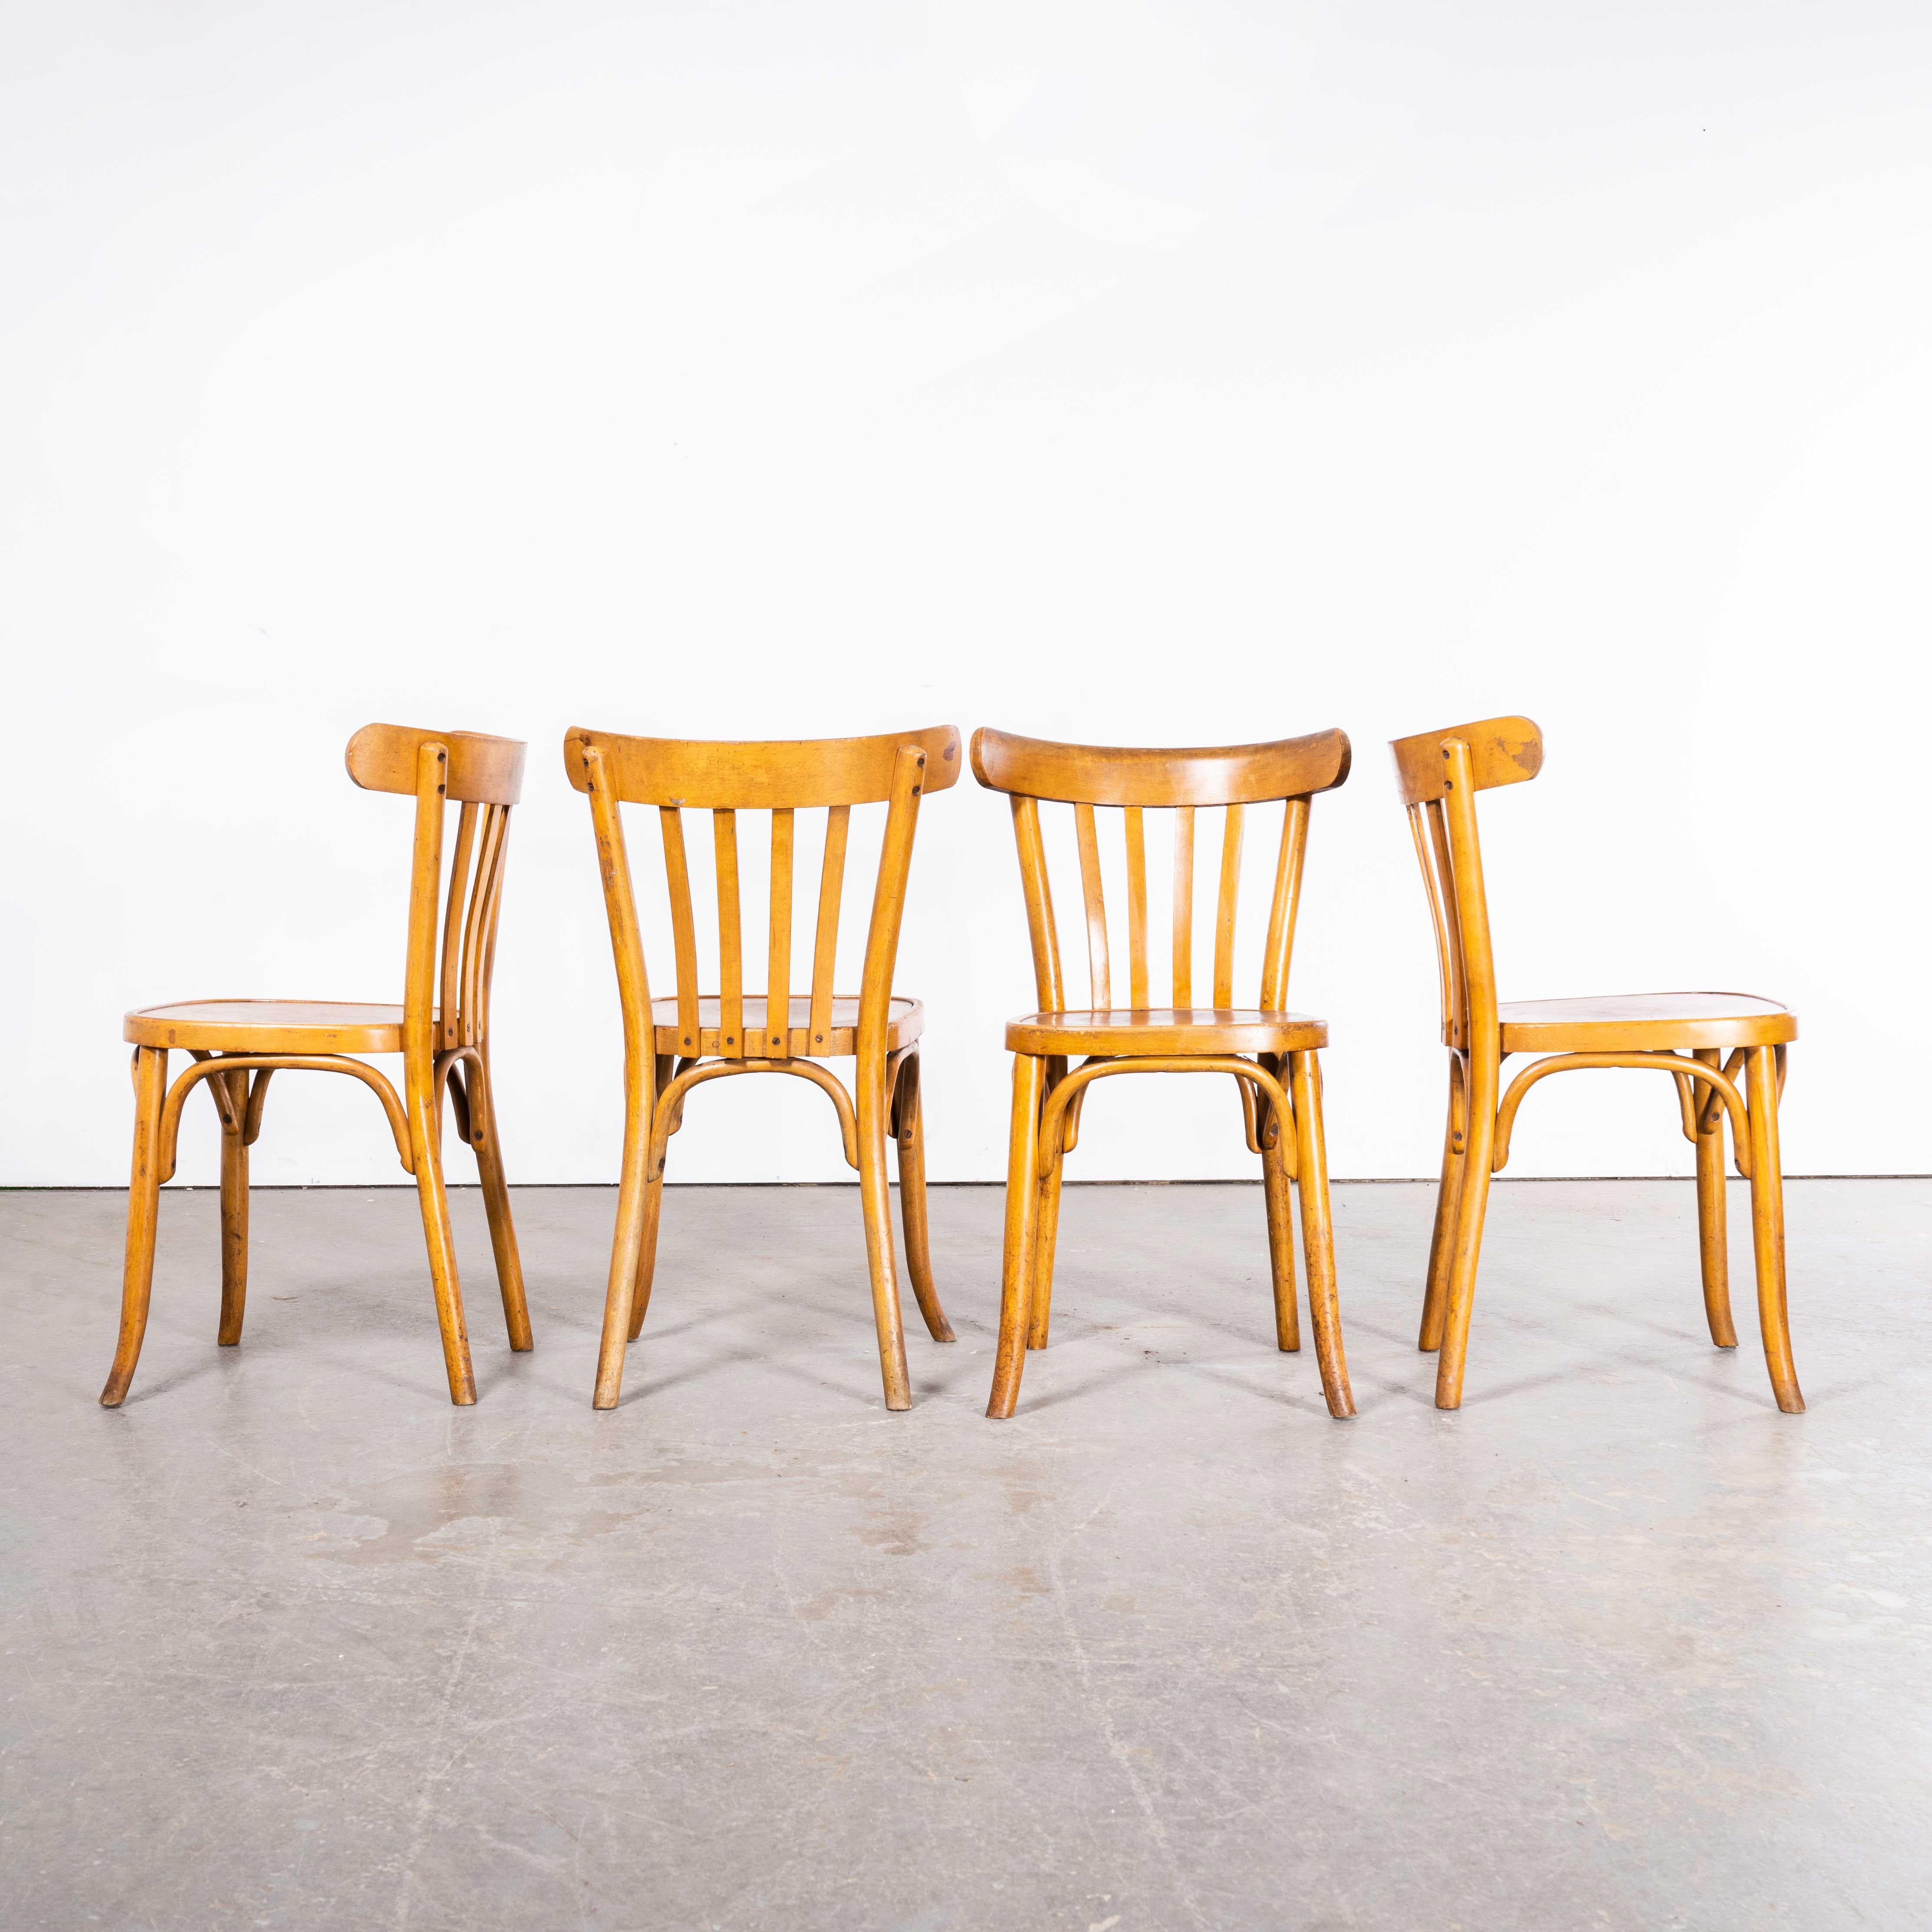 Chaise de salle à manger en bentwood en chêne miel Luterma des années 1950 - Lot de quatre
Chaise de salle à manger en bentwood Luterma Honey Oak des années 1950 - Lot de quatre. Le procédé de cintrage du hêtre à la vapeur pour créer des chaises